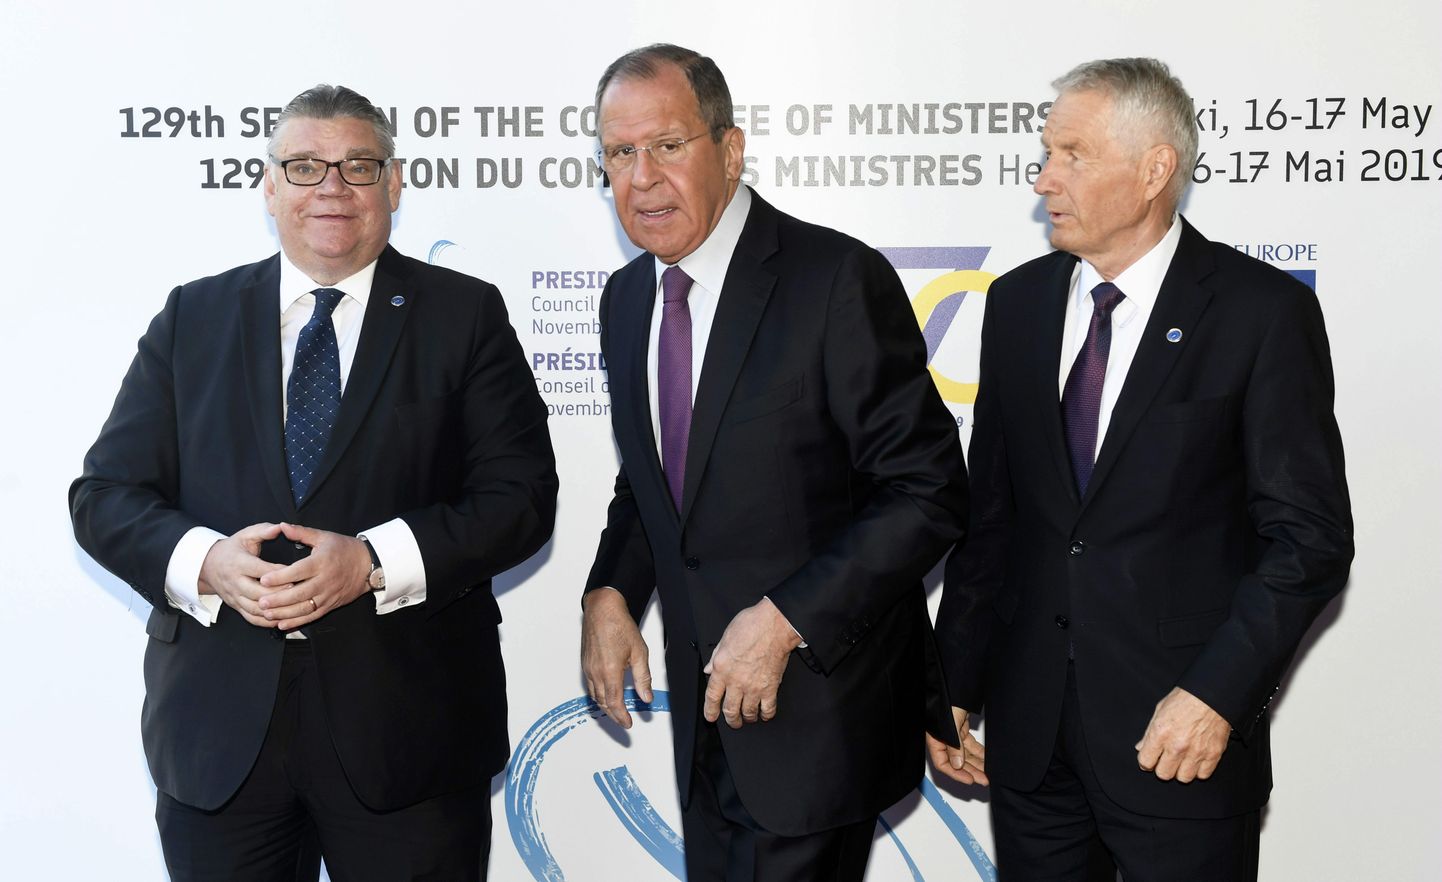 Soome välisminister Timo Soini (vasakul), Venemaa välisminister Sergei Lavrov (keskel) ja Euroopa Nõukogu peasekretär Thorbjørn Jagland (paremal) Helsingis, kus toimub Euroopa Nõukogu välisministrite iga-aastane istung.